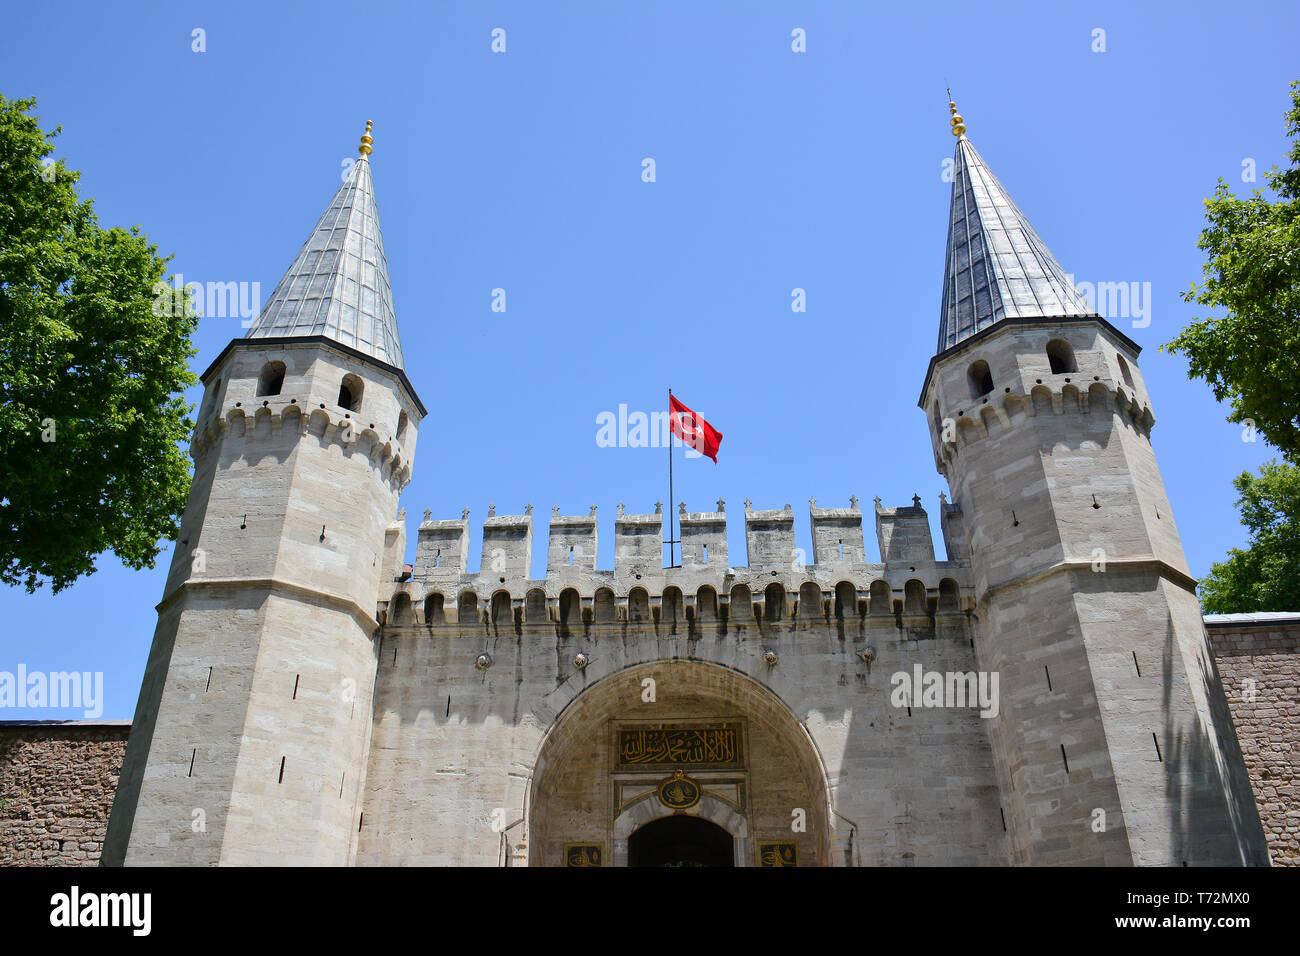 La porte de salutation, entrée de la Deuxième cour du palais de Topkapi Saray, Topkapi, Istanbul, Turquie Banque D'Images